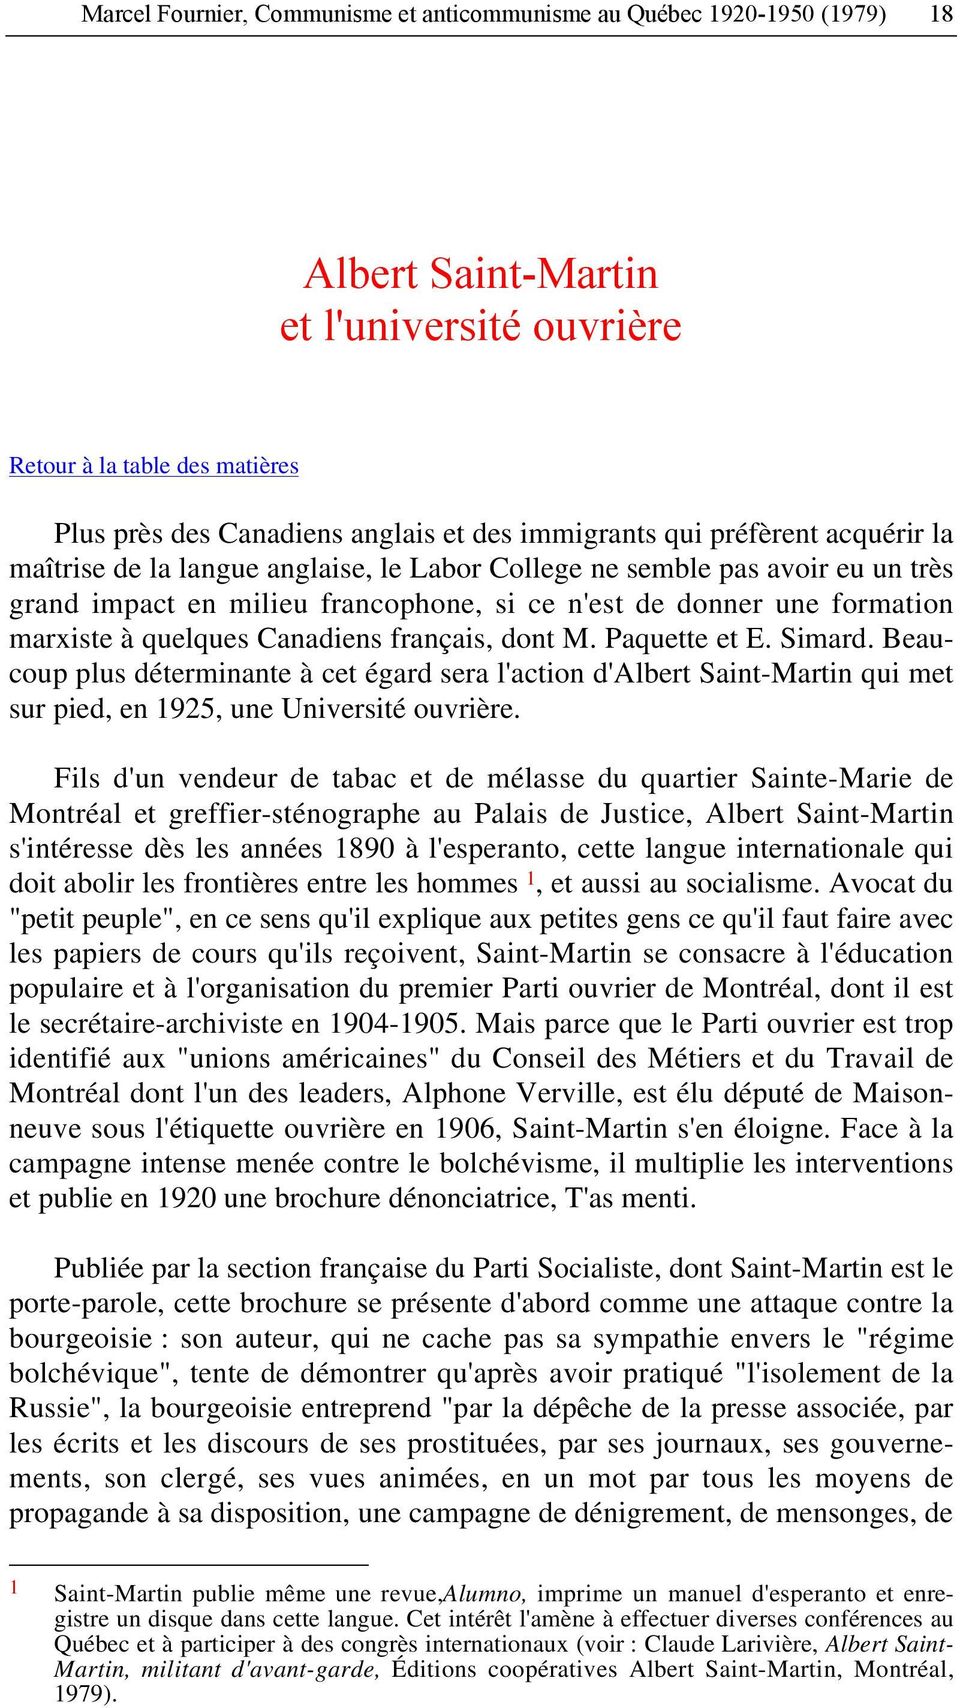 quelques Canadiens français, dont M. Paquette et E. Simard. Beaucoup plus déterminante à cet égard sera l'action d'albert Saint-Martin qui met sur pied, en 1925, une Université ouvrière.